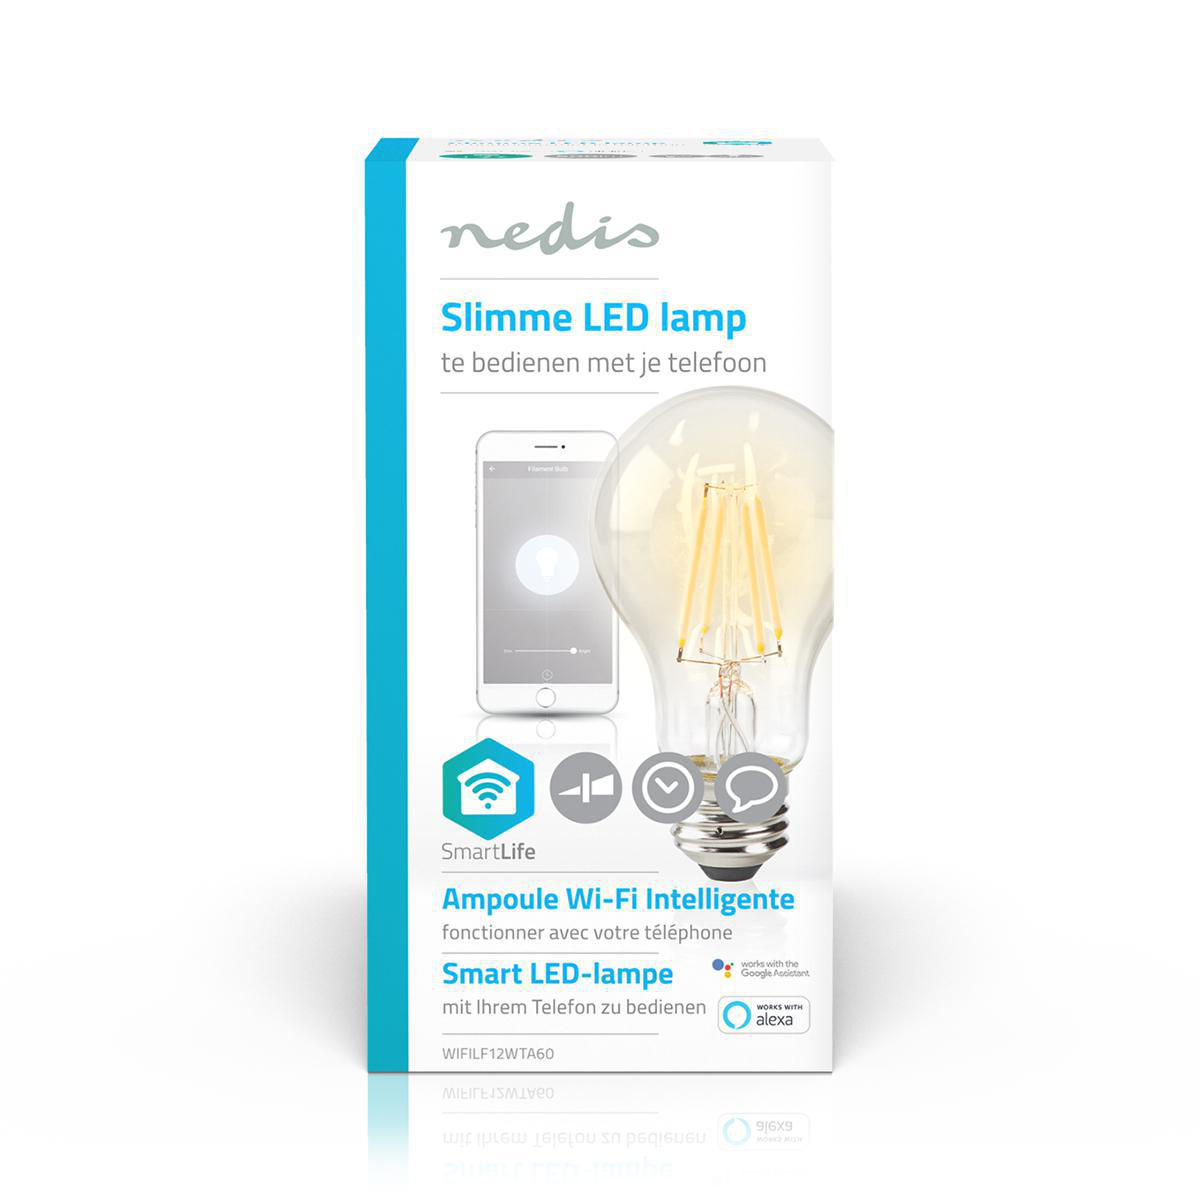 Foto : Review - Slimme Nedis LED-Lamp met Gloeidraad en Wi-Fi